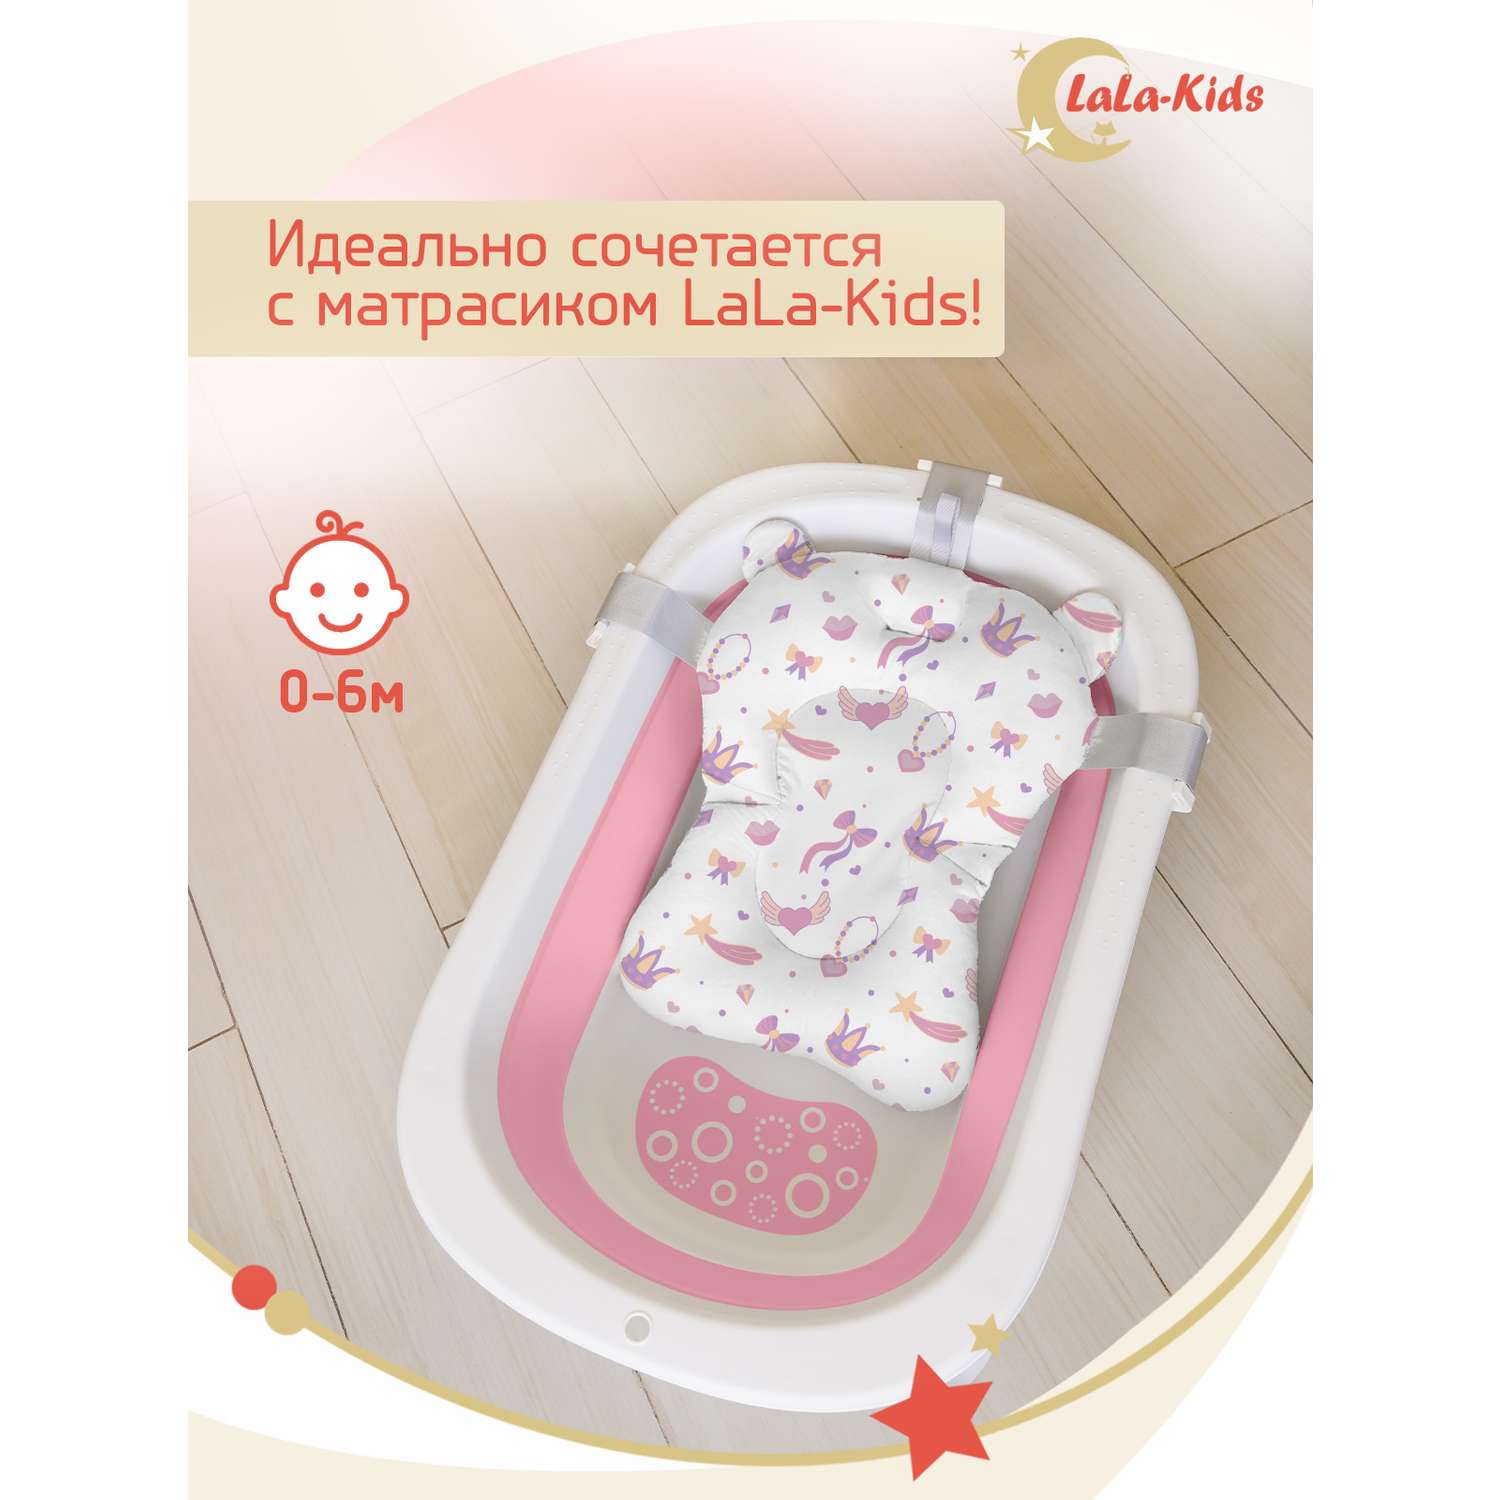 Складная ванночка LaLa-Kids для купания новорожденных с термометром - фото 11